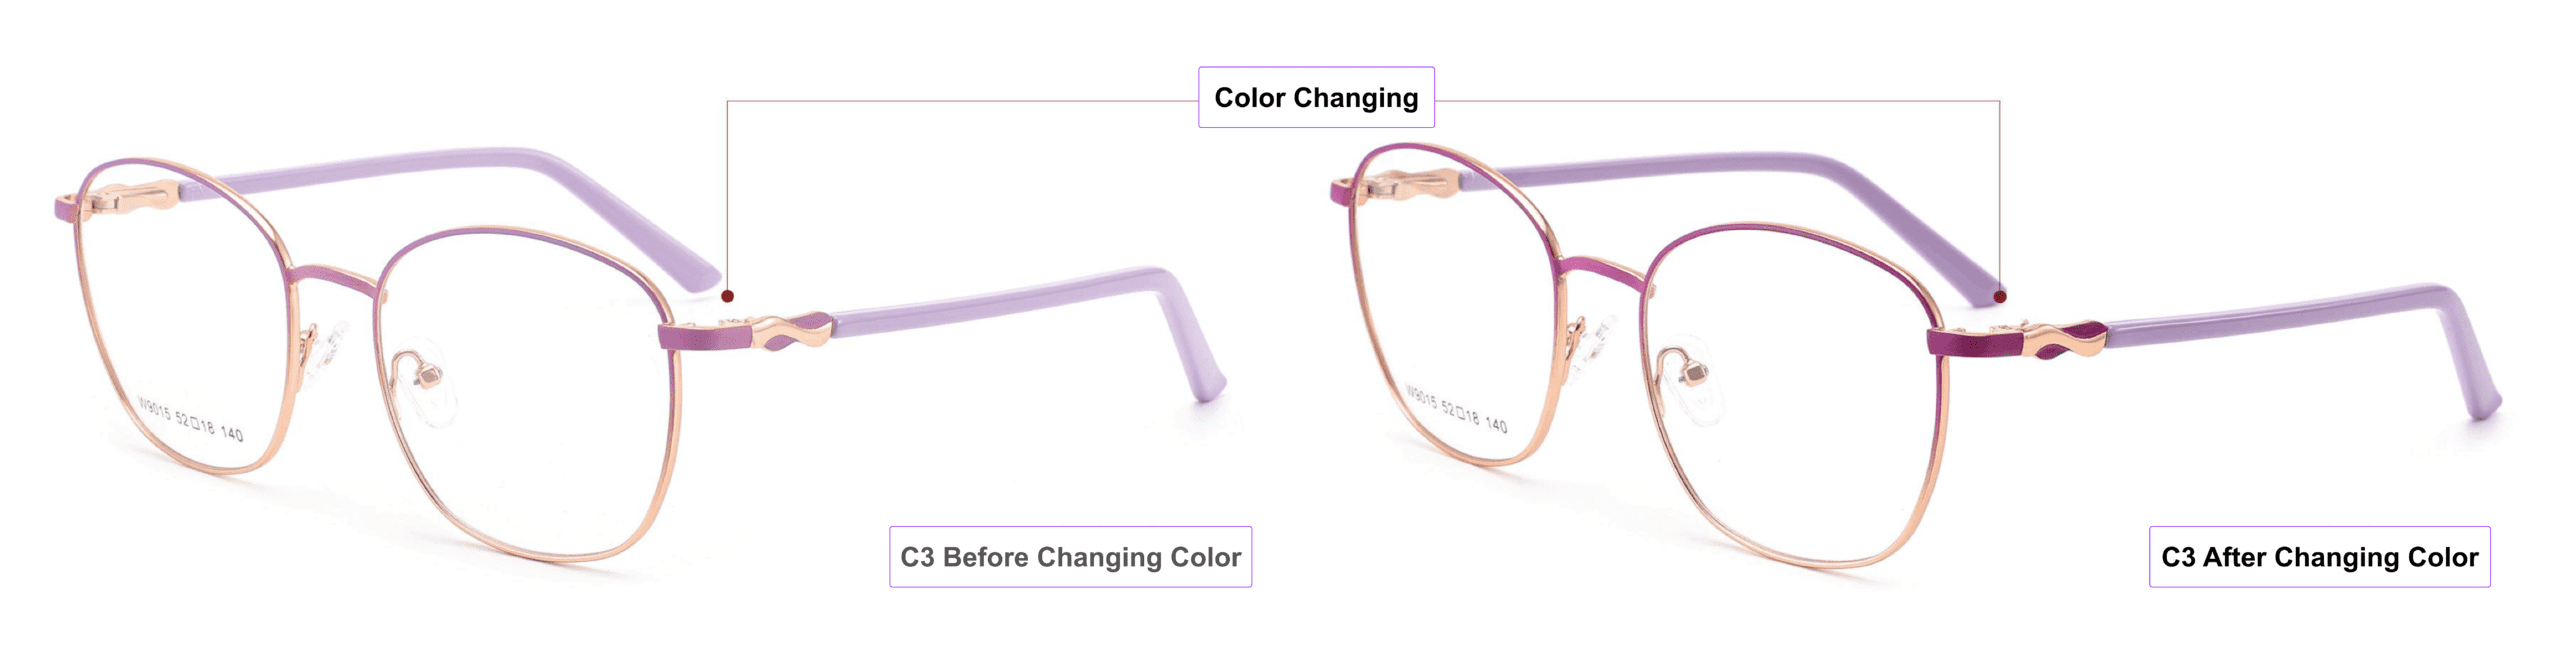 Sunlight Activated, Color Changing Glasses Frames,petal pink,mist violet, indian red, China glasses frames